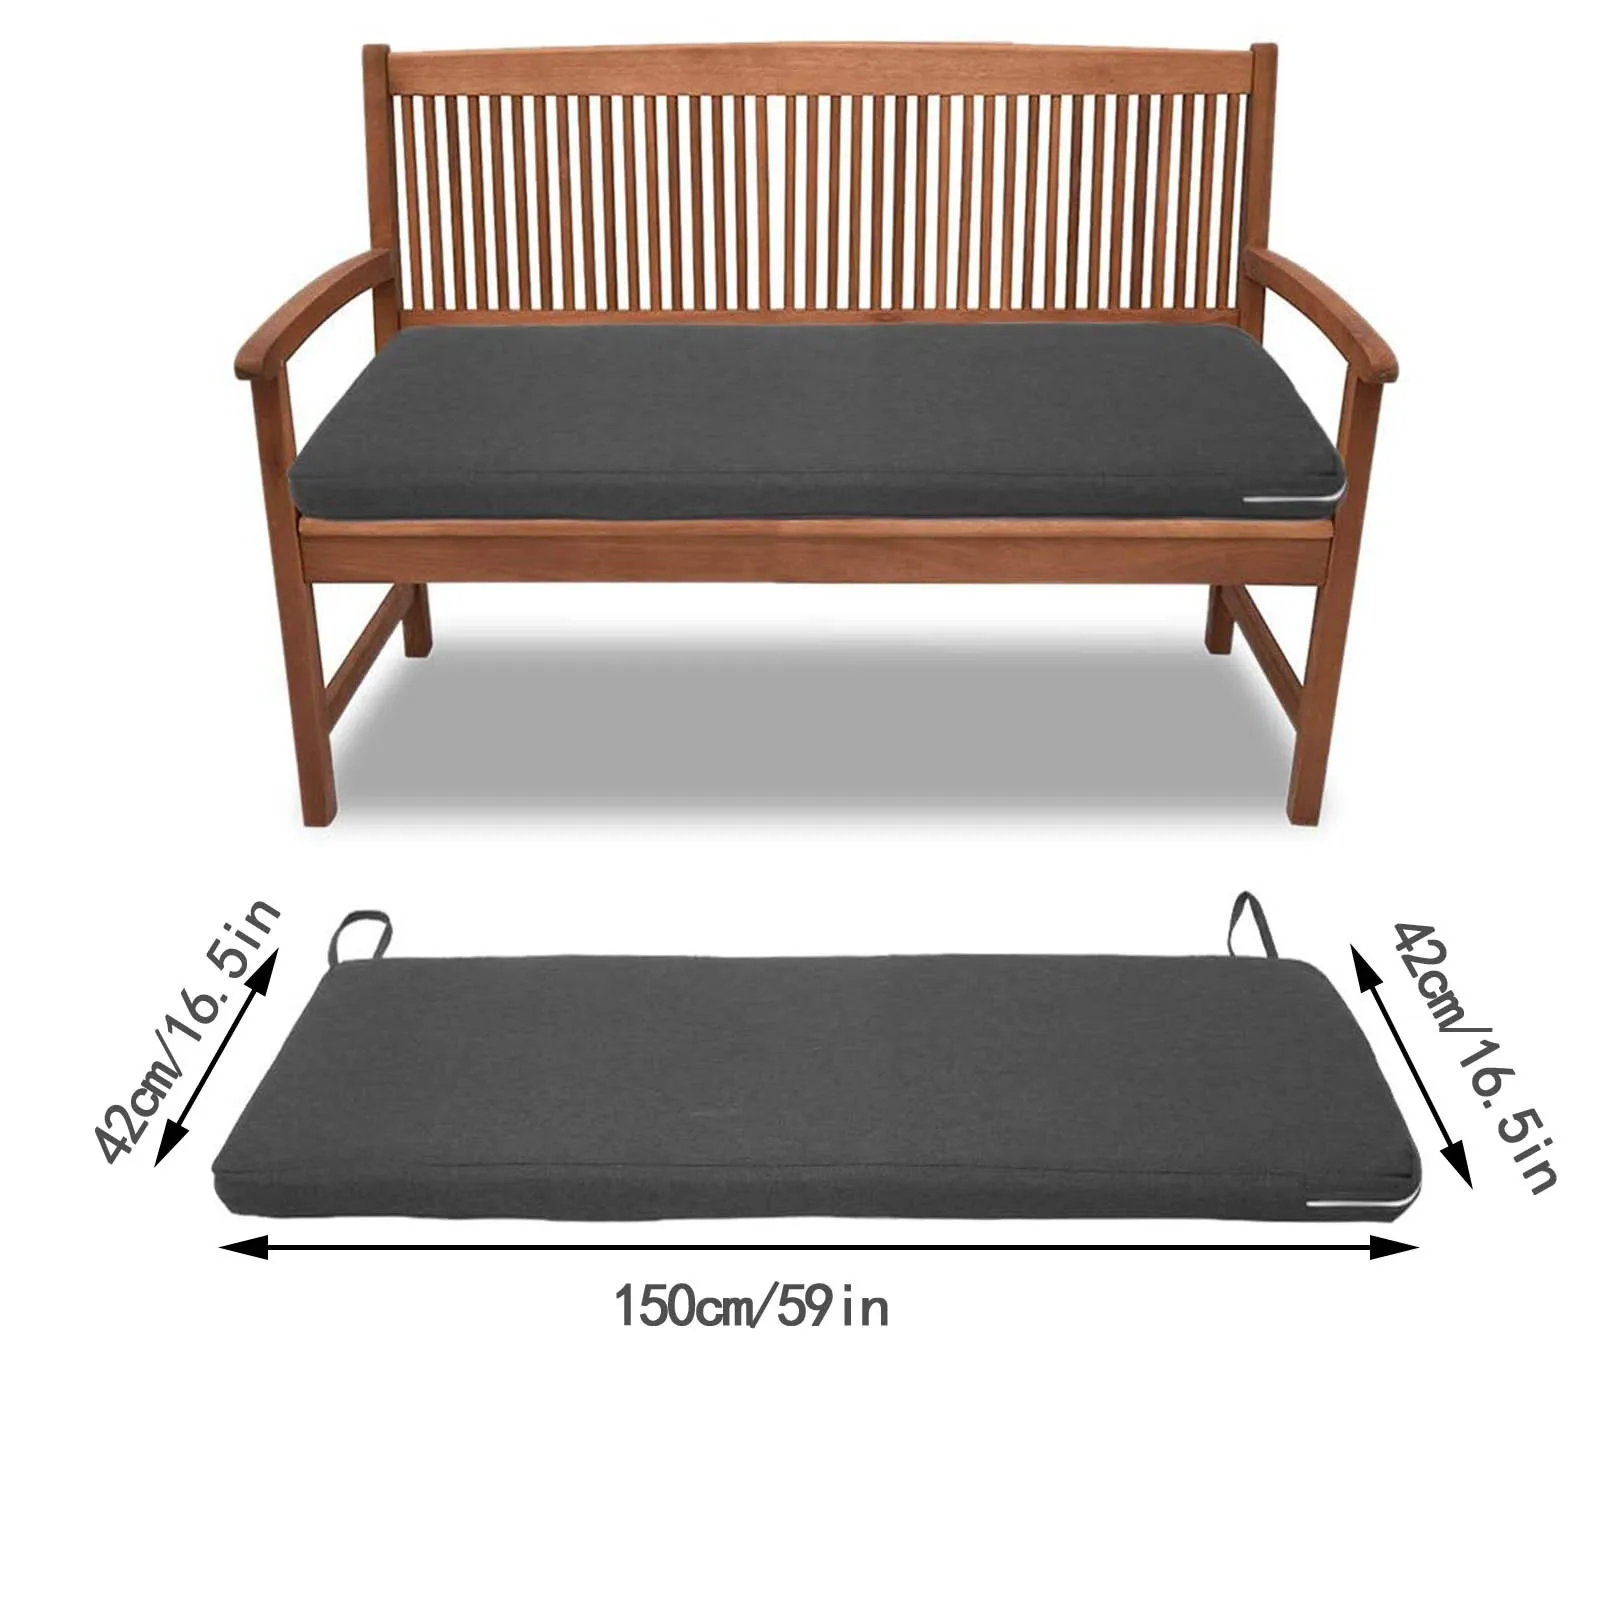 Мягкие подушки на скамью: матрасы для садовых скамеек и мягкие подушки-сидушки в беседку и прихожую, другие модели